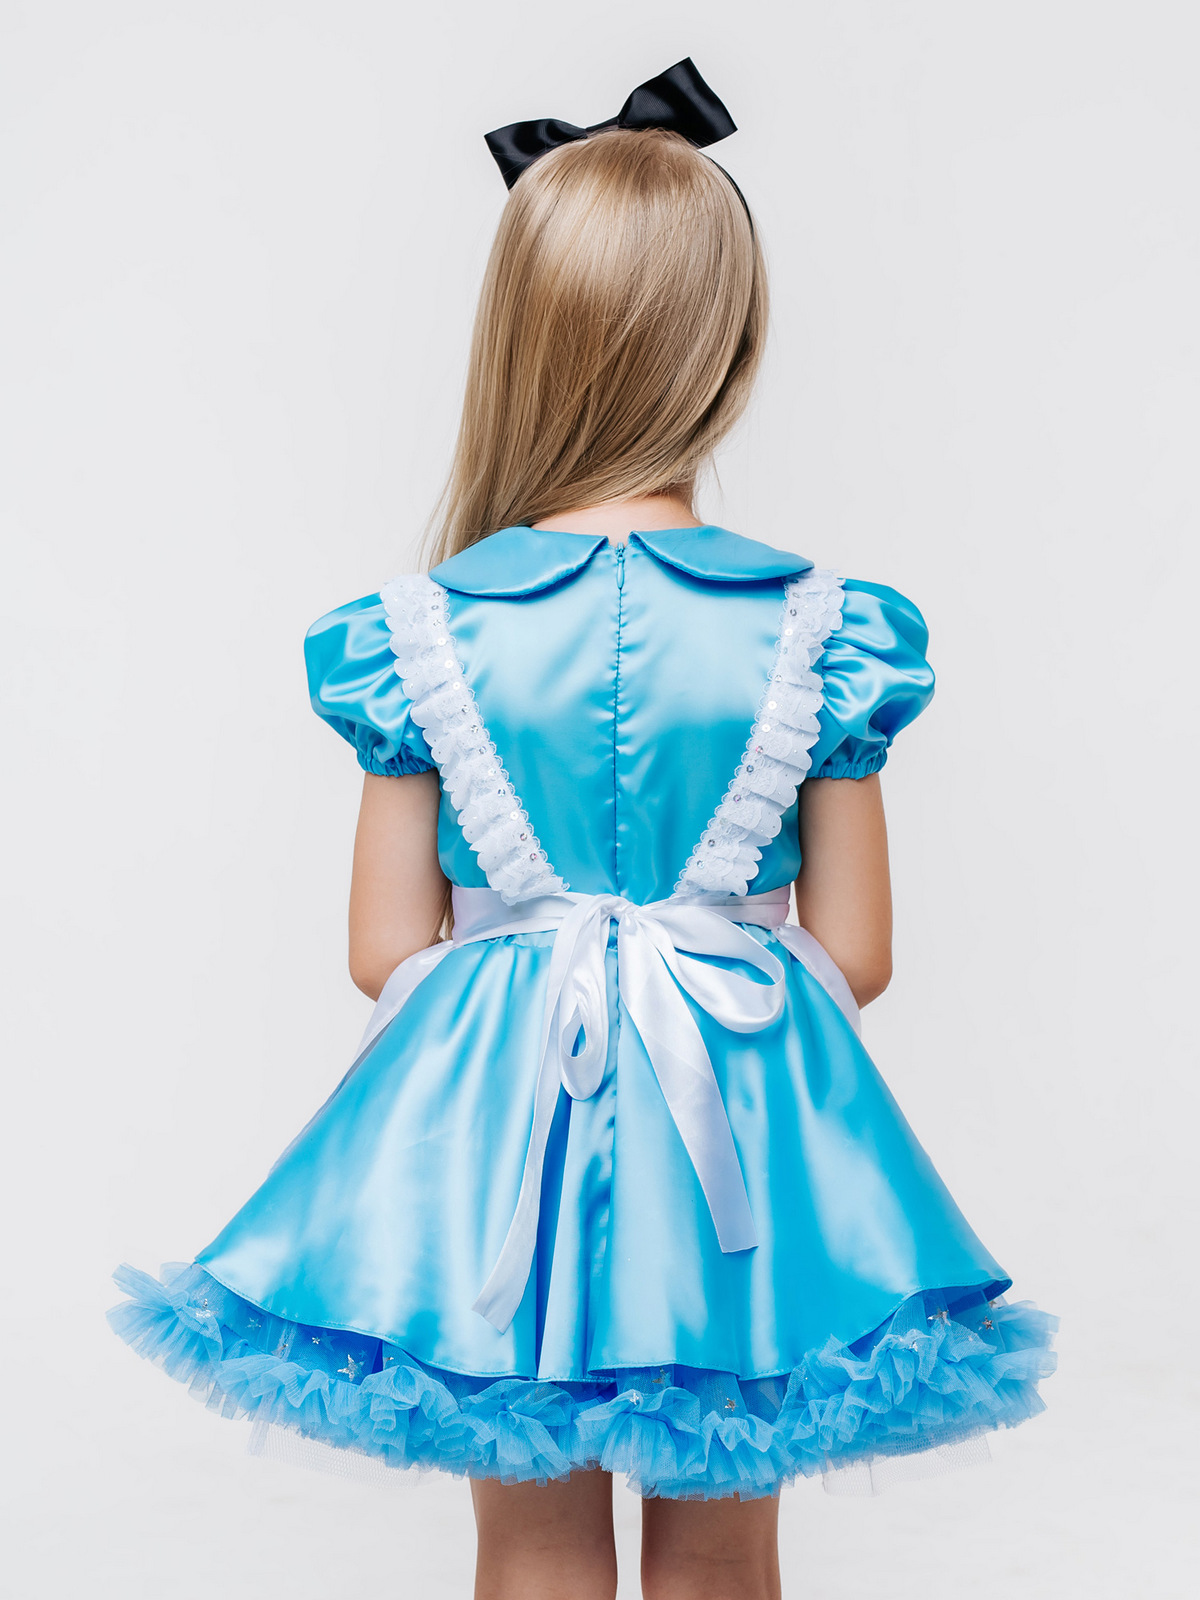 Для каких мероприятий можно заказать платье Алисы для аниматора